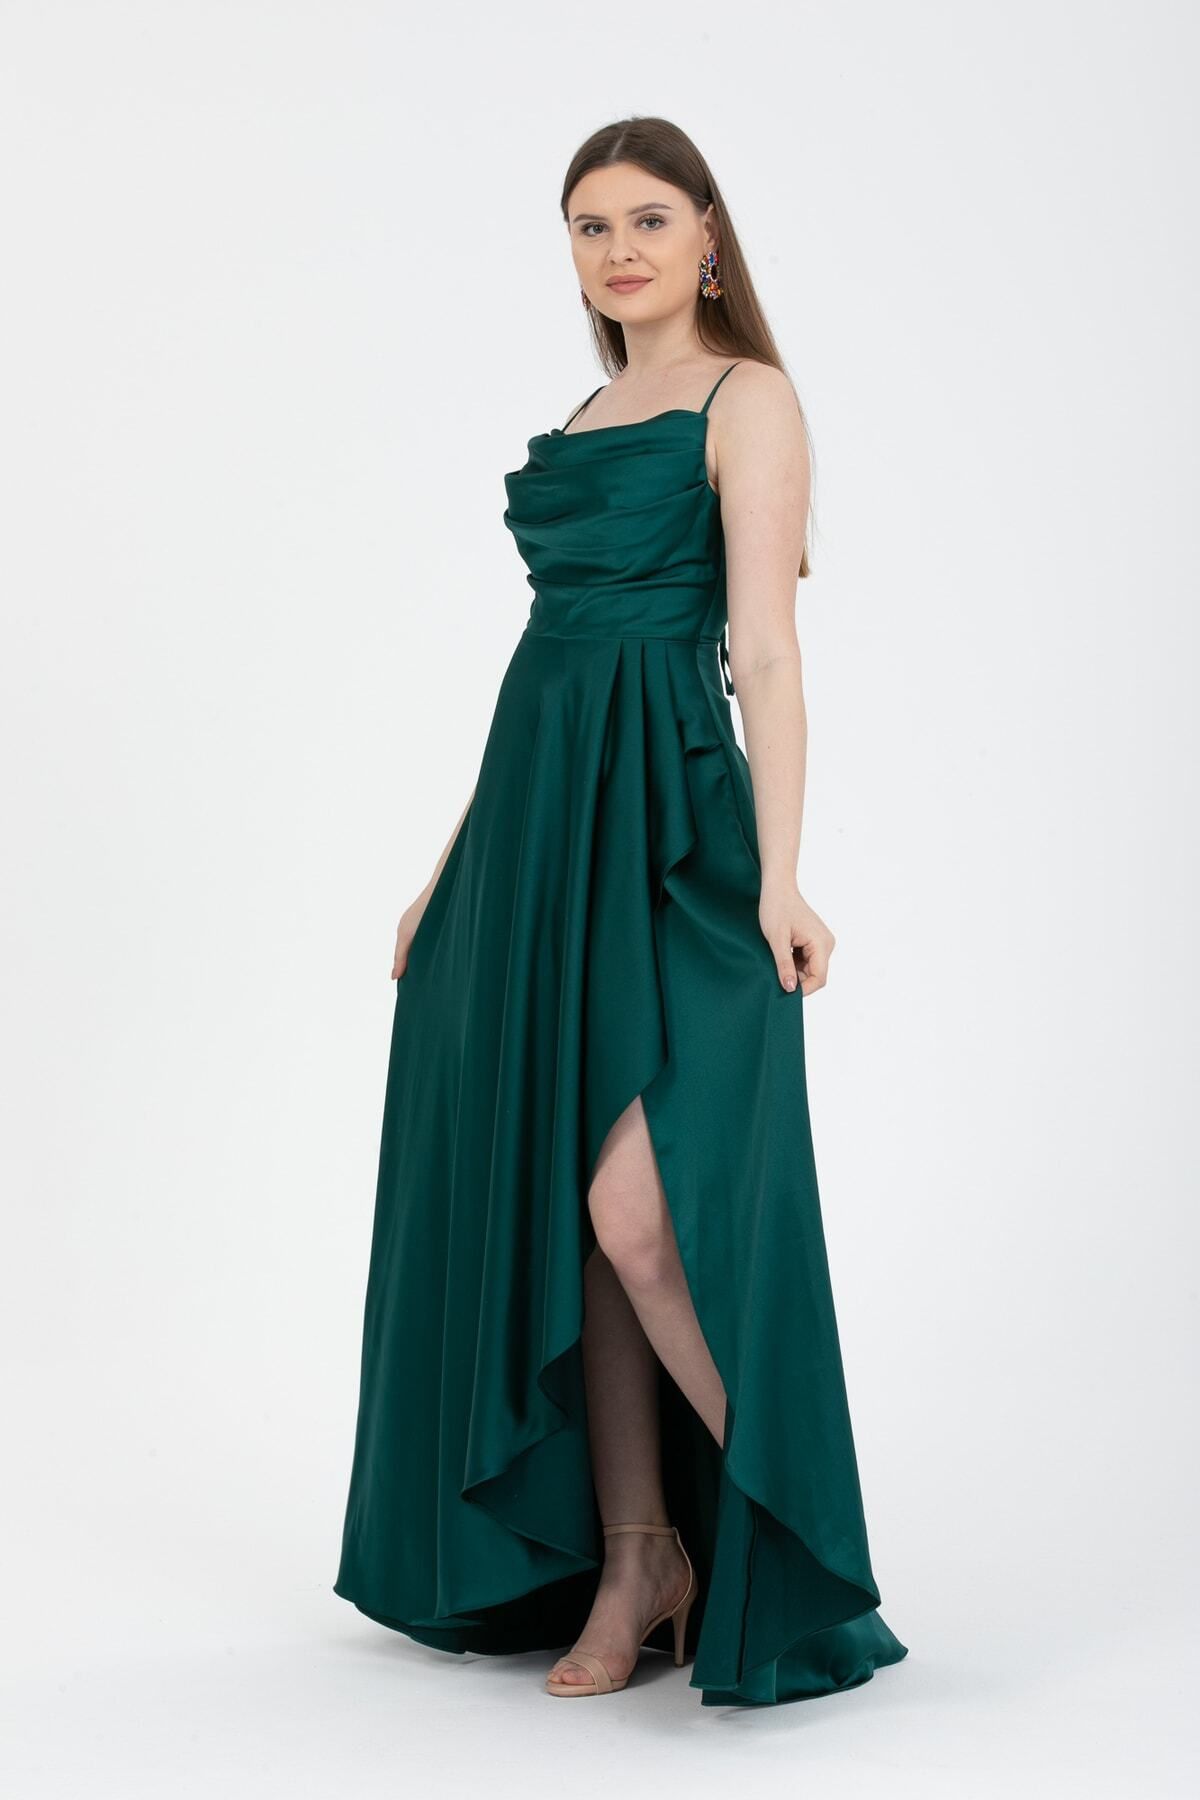 meksila Kadın Volanlı Yırtmaçlı Saten Abiye Ve Mezuniyet Elbisesi /5024zümrüt Yeşili